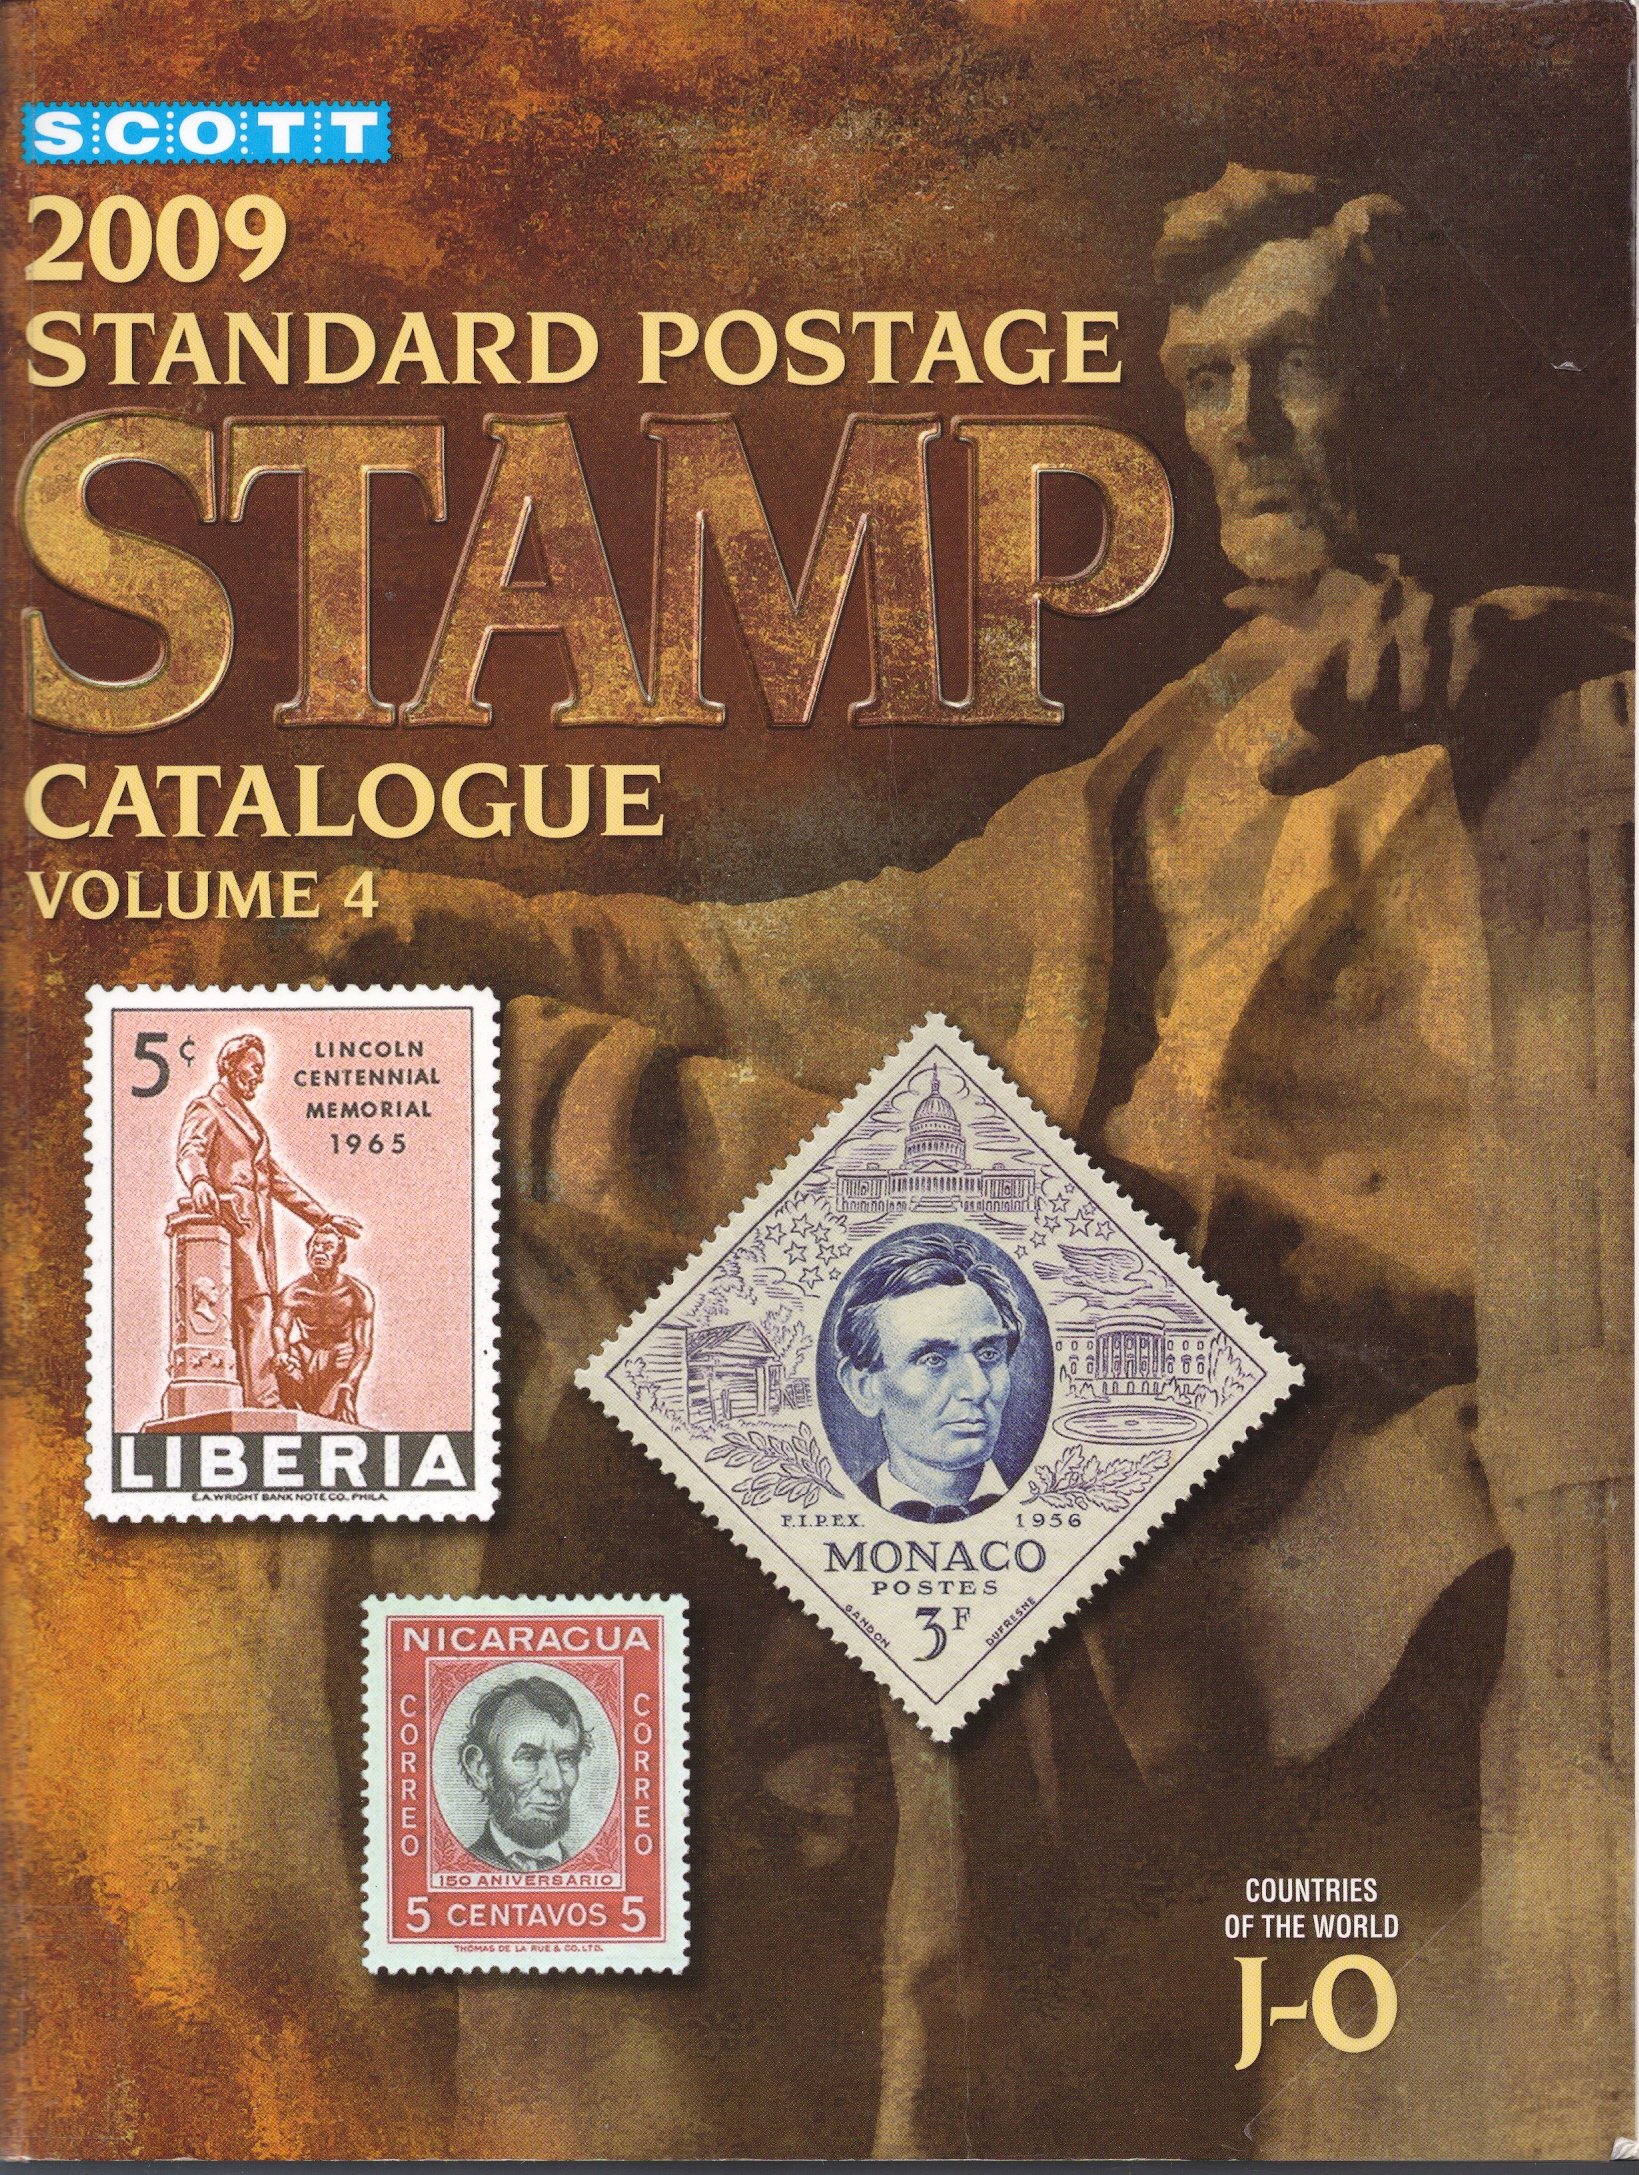 Scott 2009 Standard Postage Stamp Catalogue - 6 Volumes